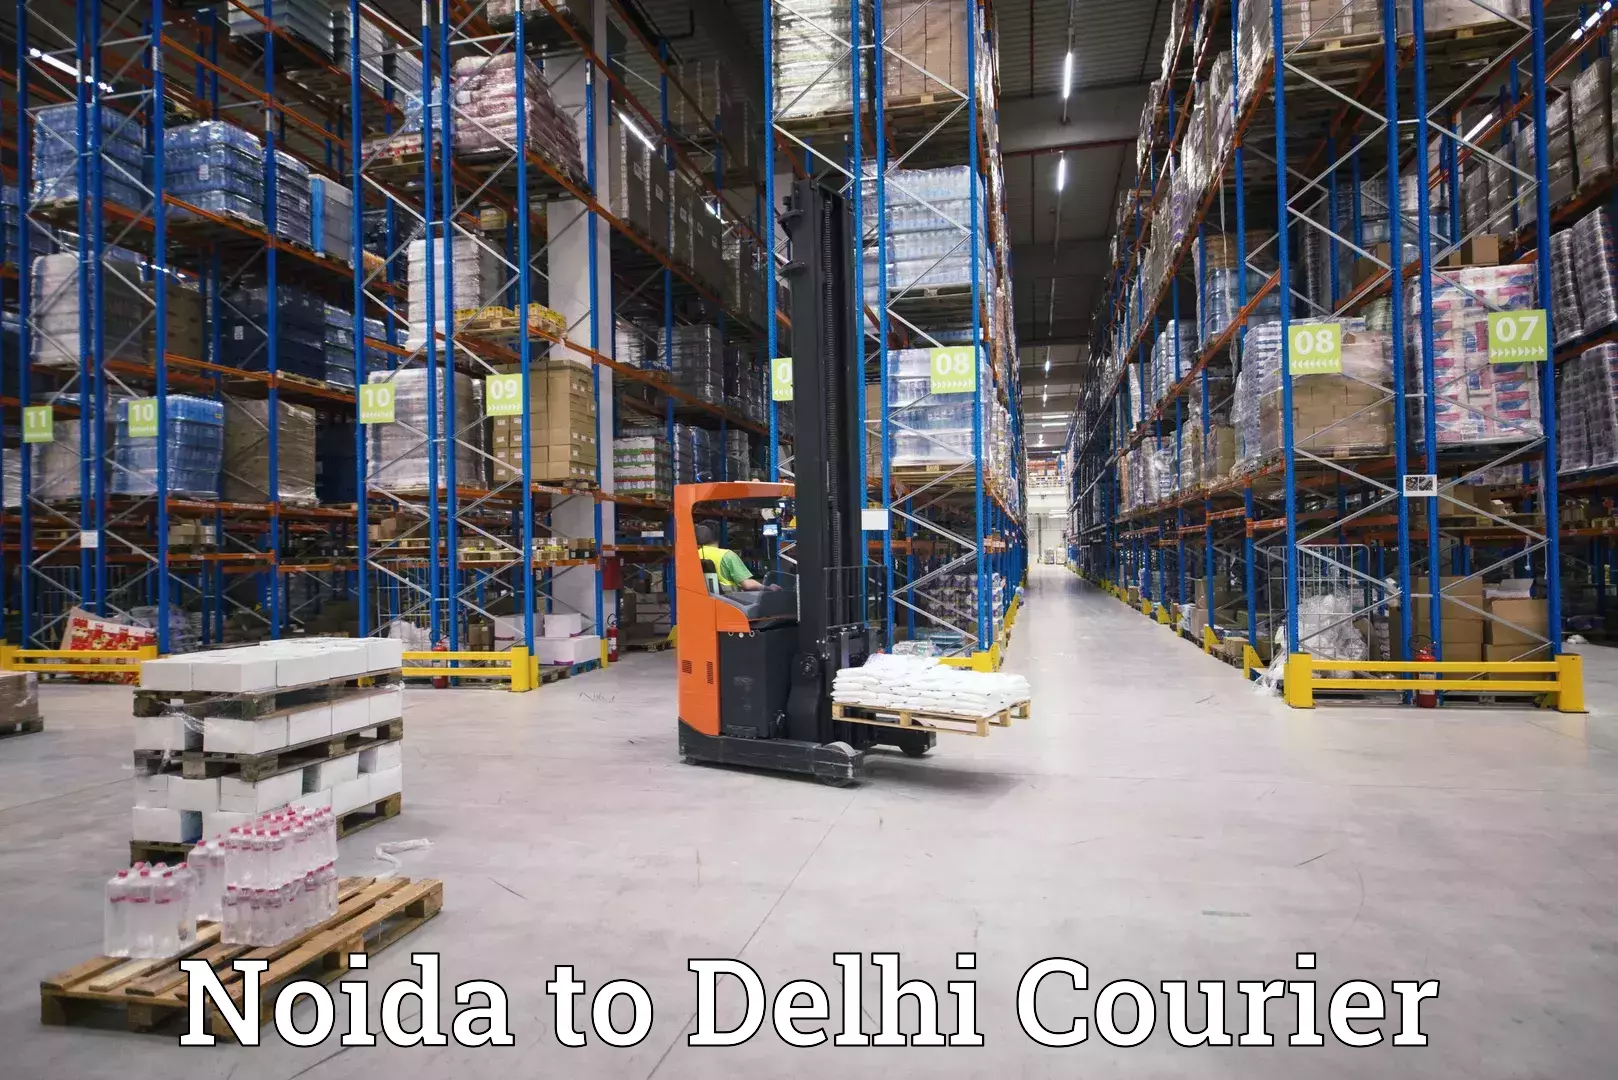 Courier service innovation Noida to Ashok Vihar